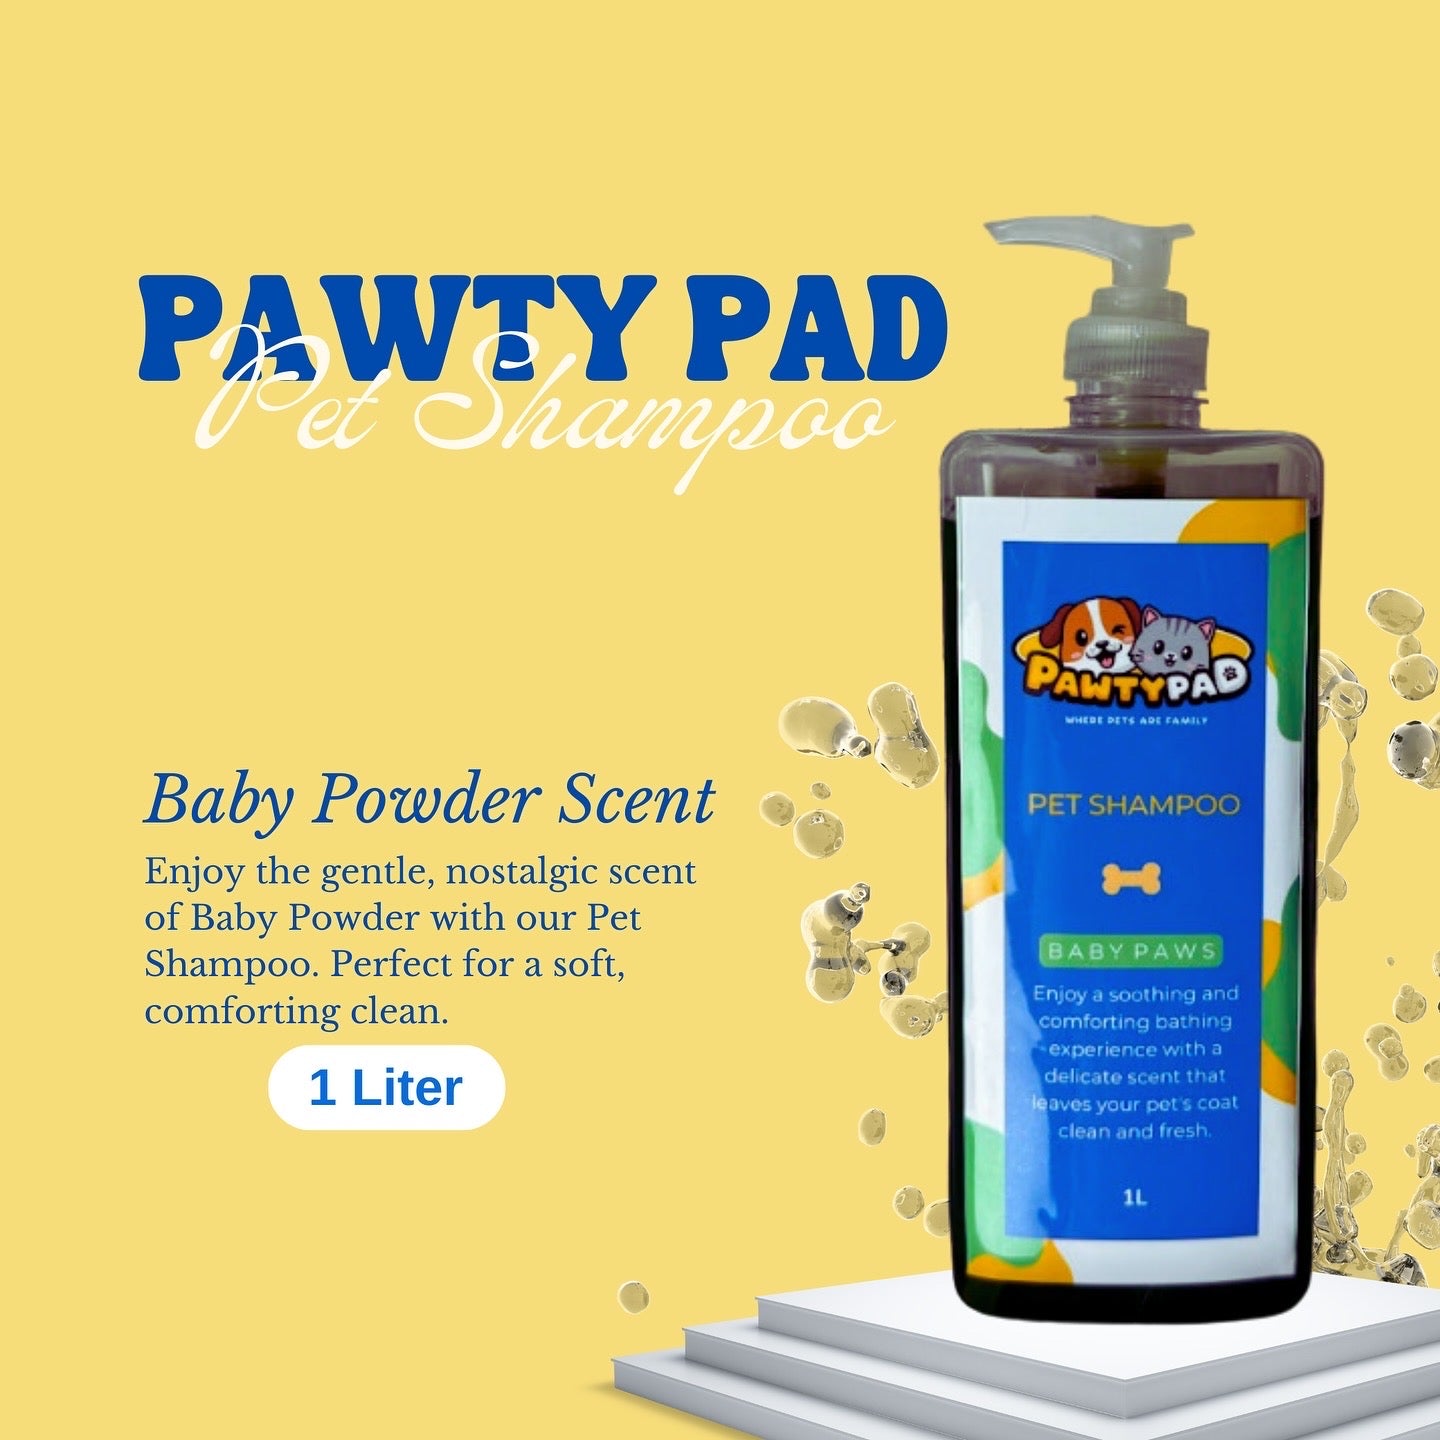 1L Pawty Pad Pet Shampoo